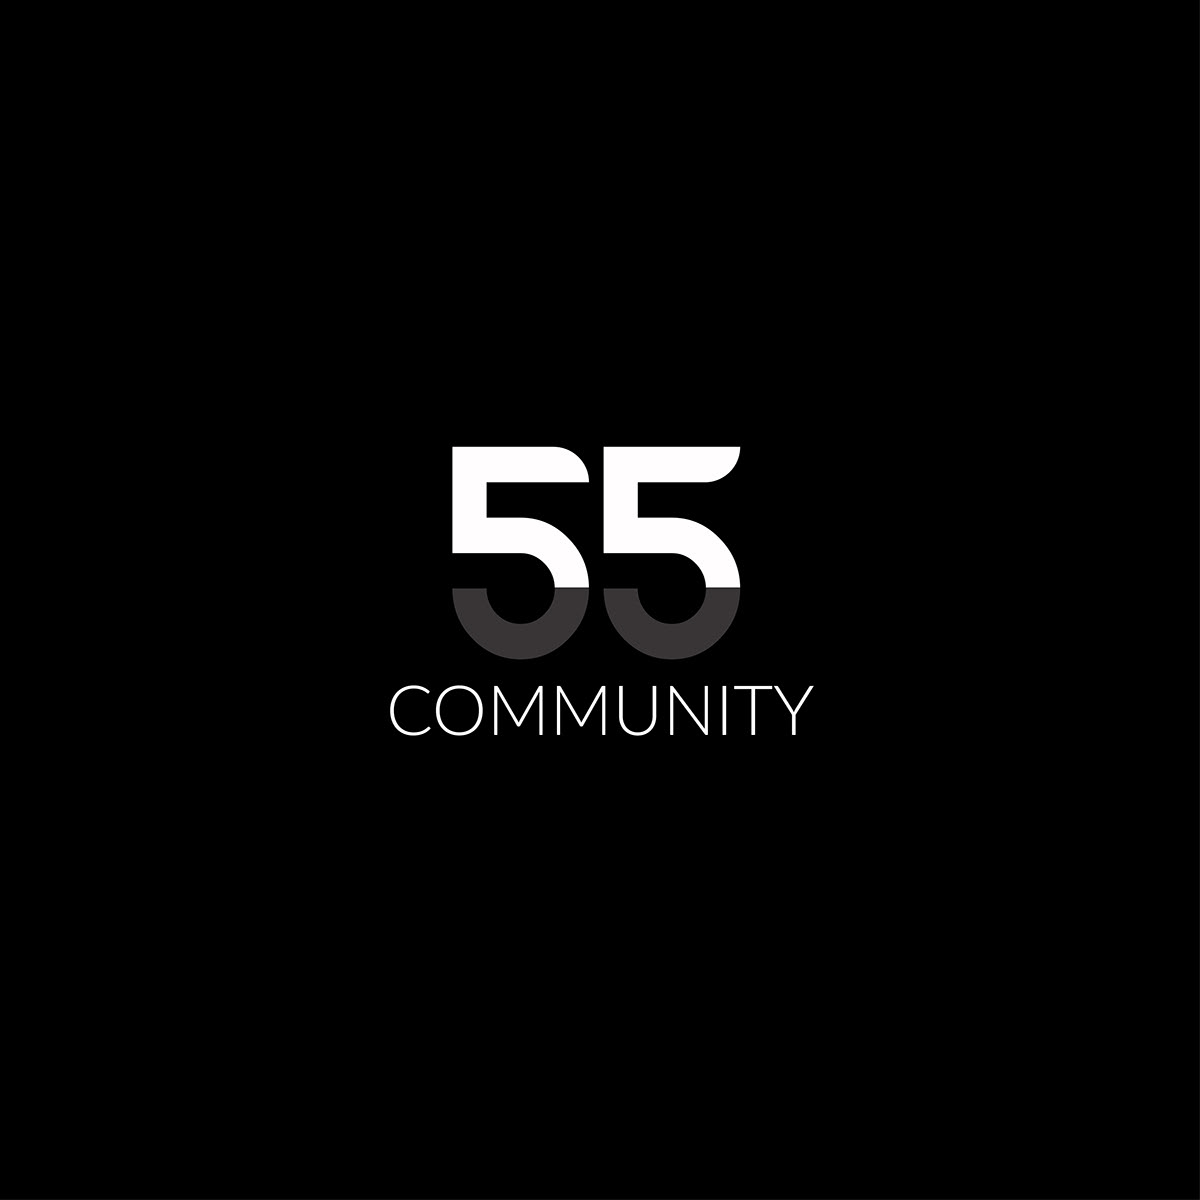 55 Community Logo